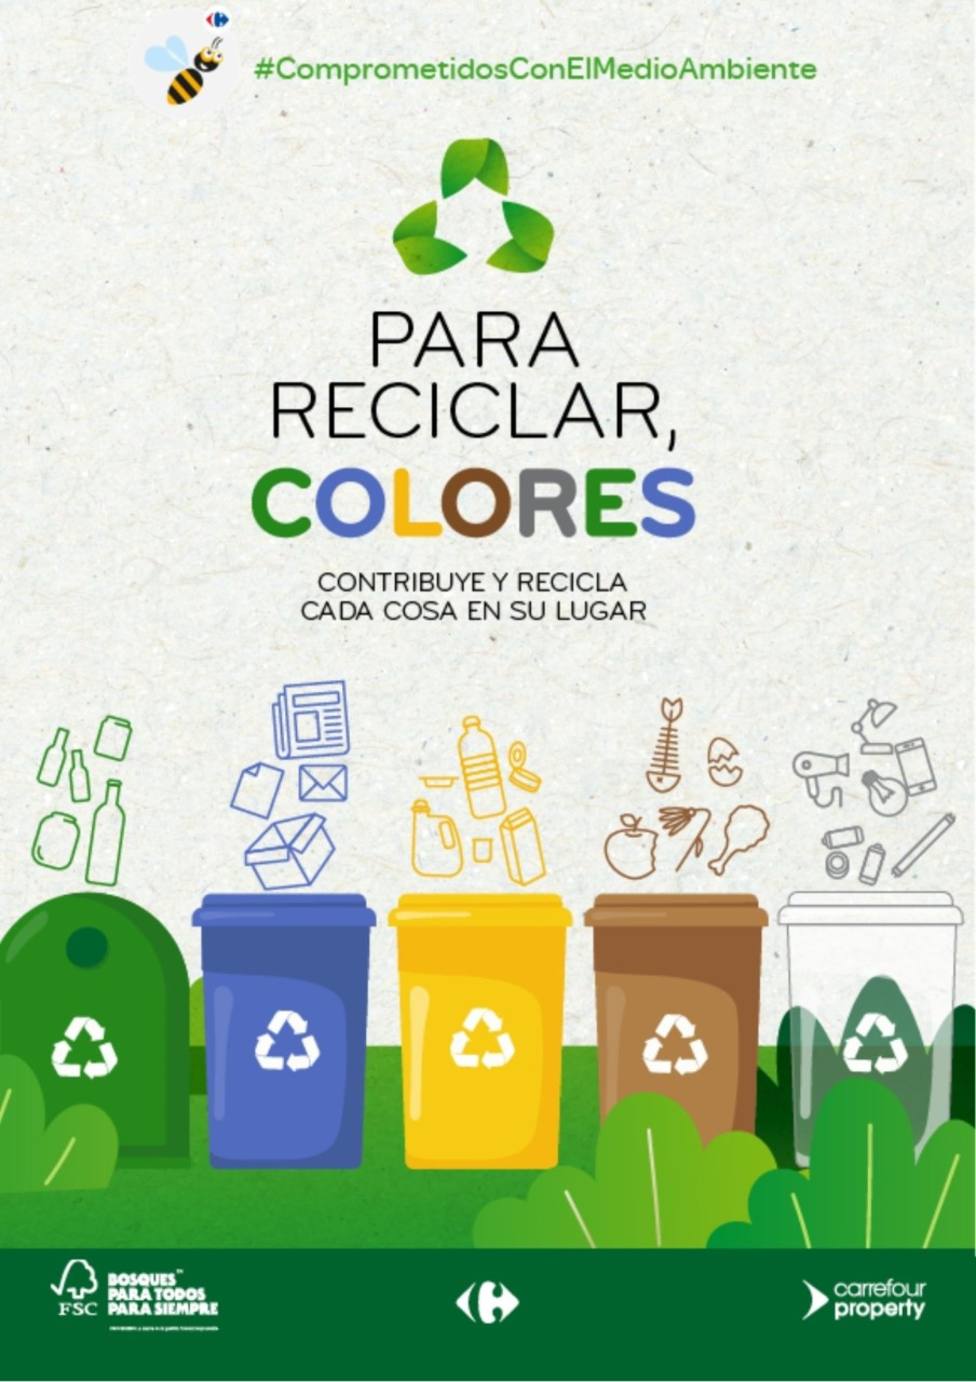 El Ayuntamiento de Águilas se suma a la campaña “Para reciclar, colores”